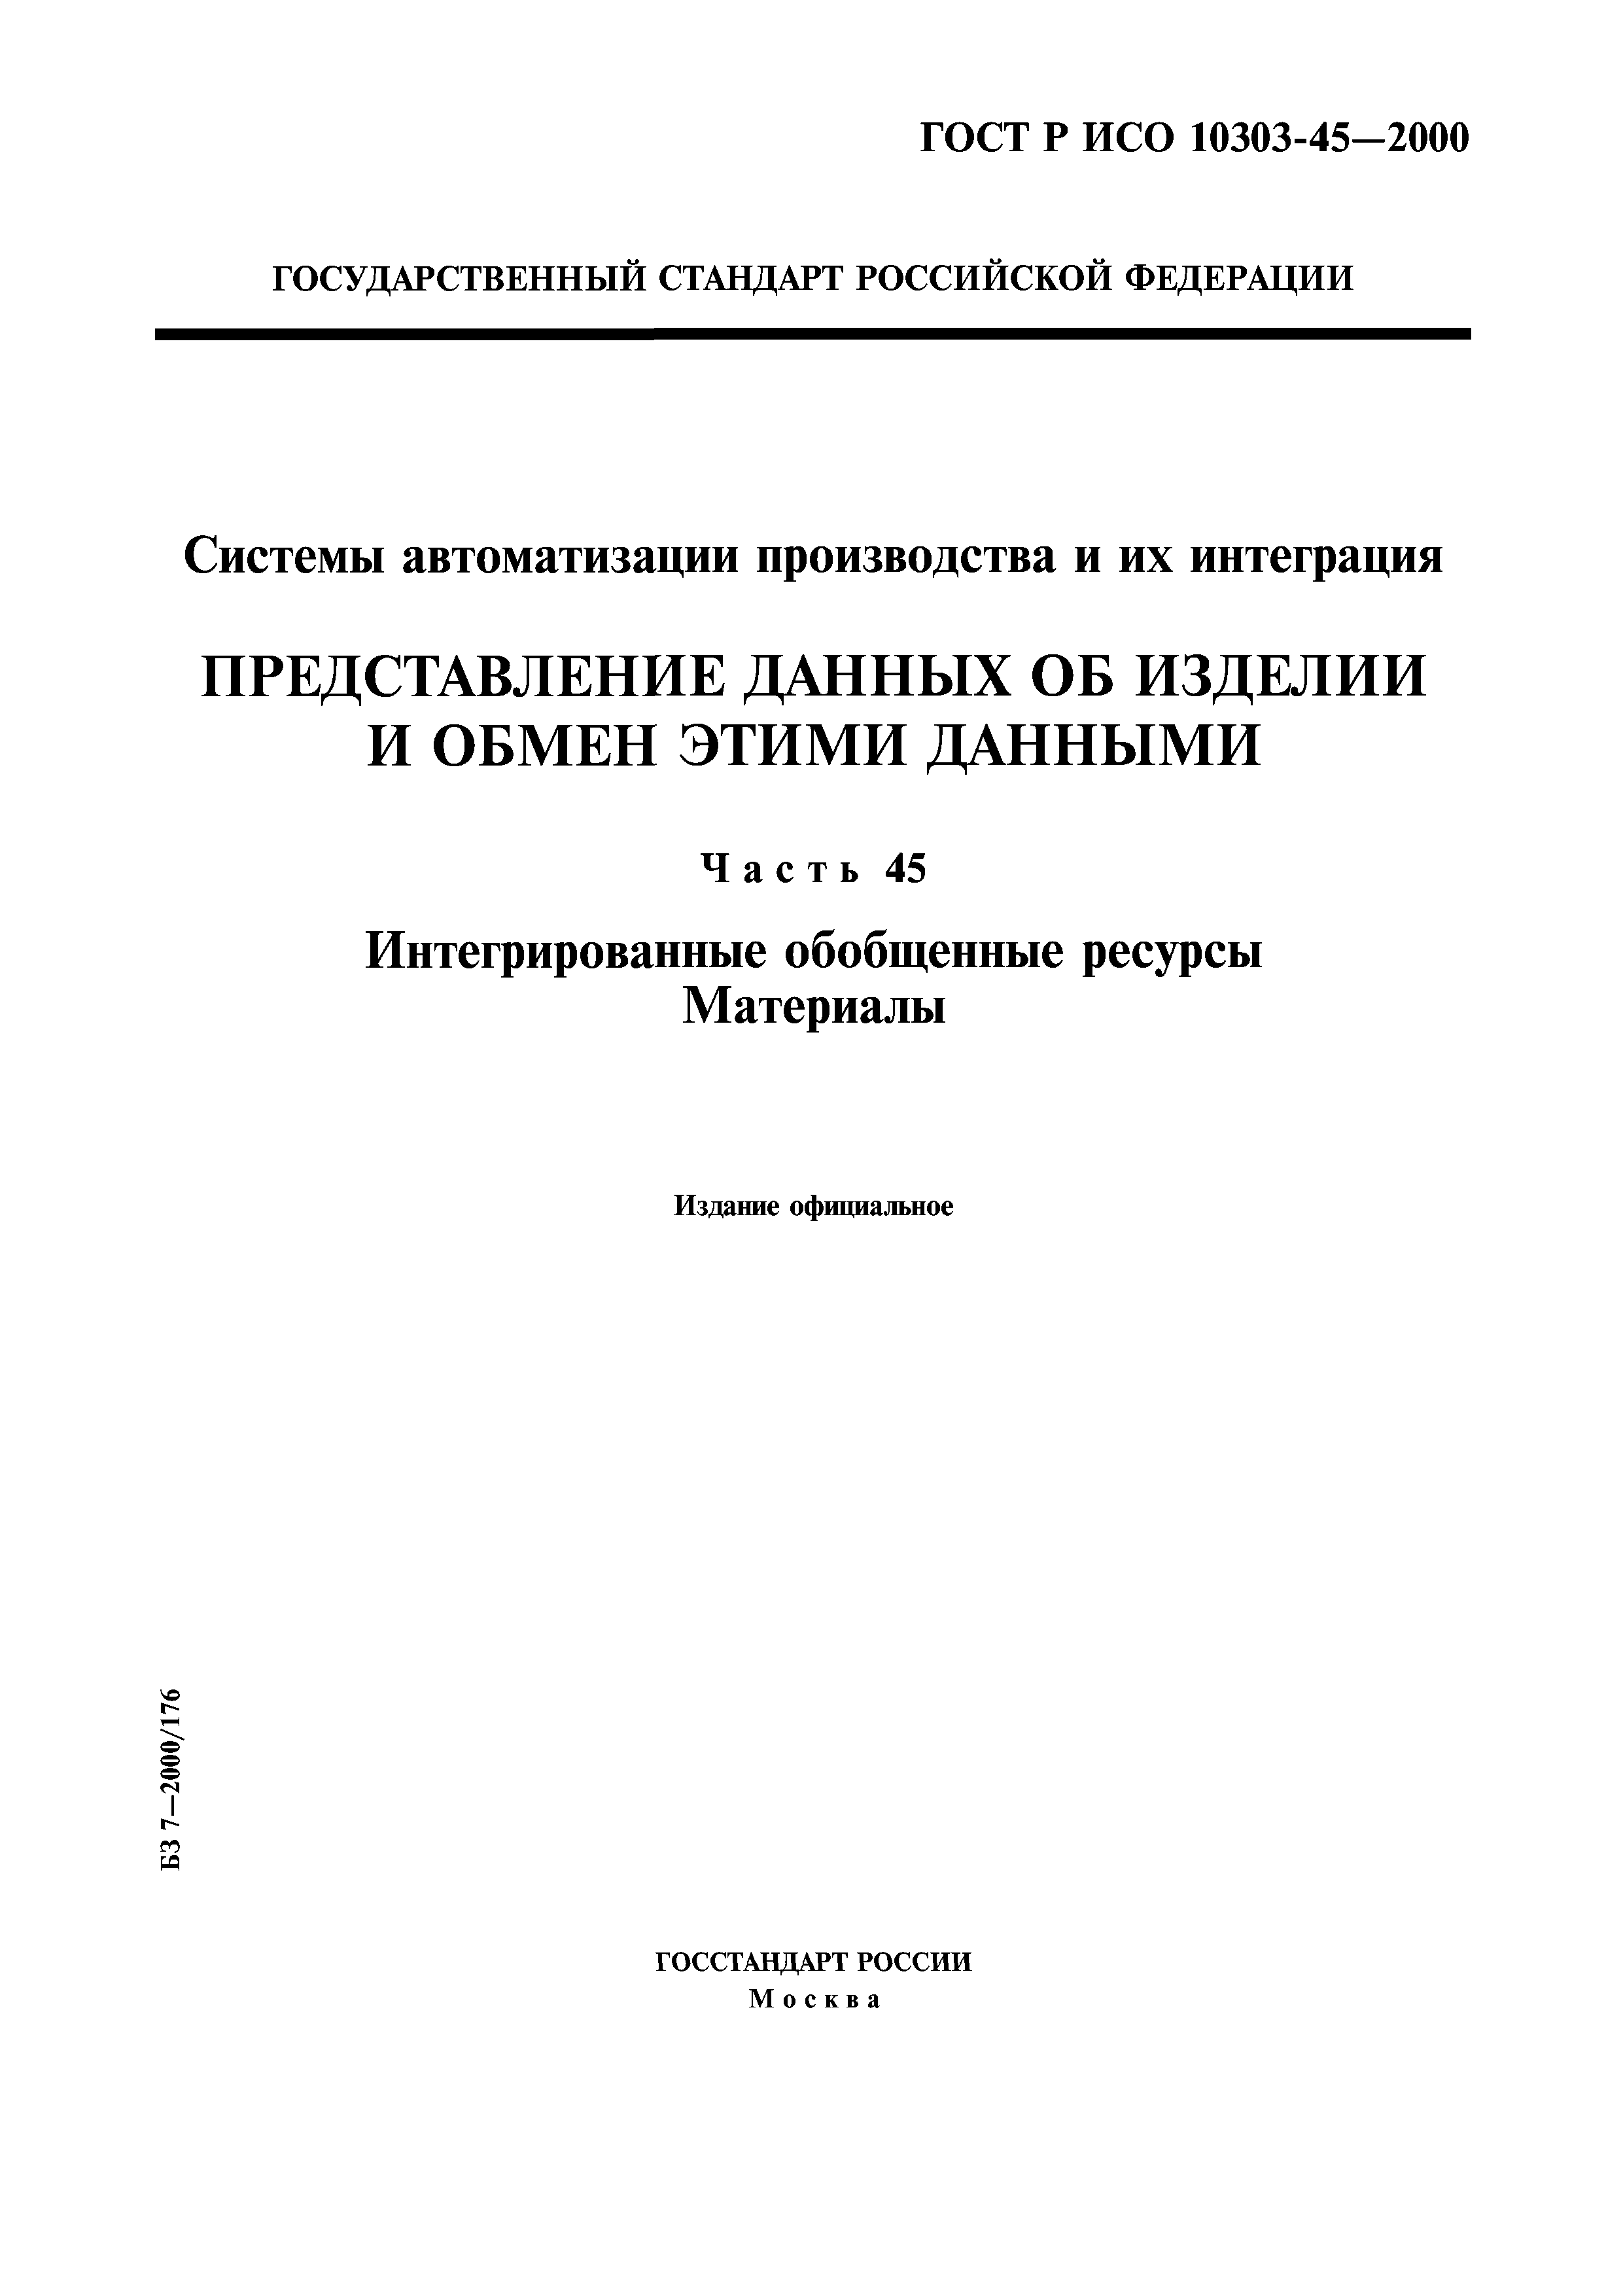 ГОСТ Р ИСО 10303-45-2000